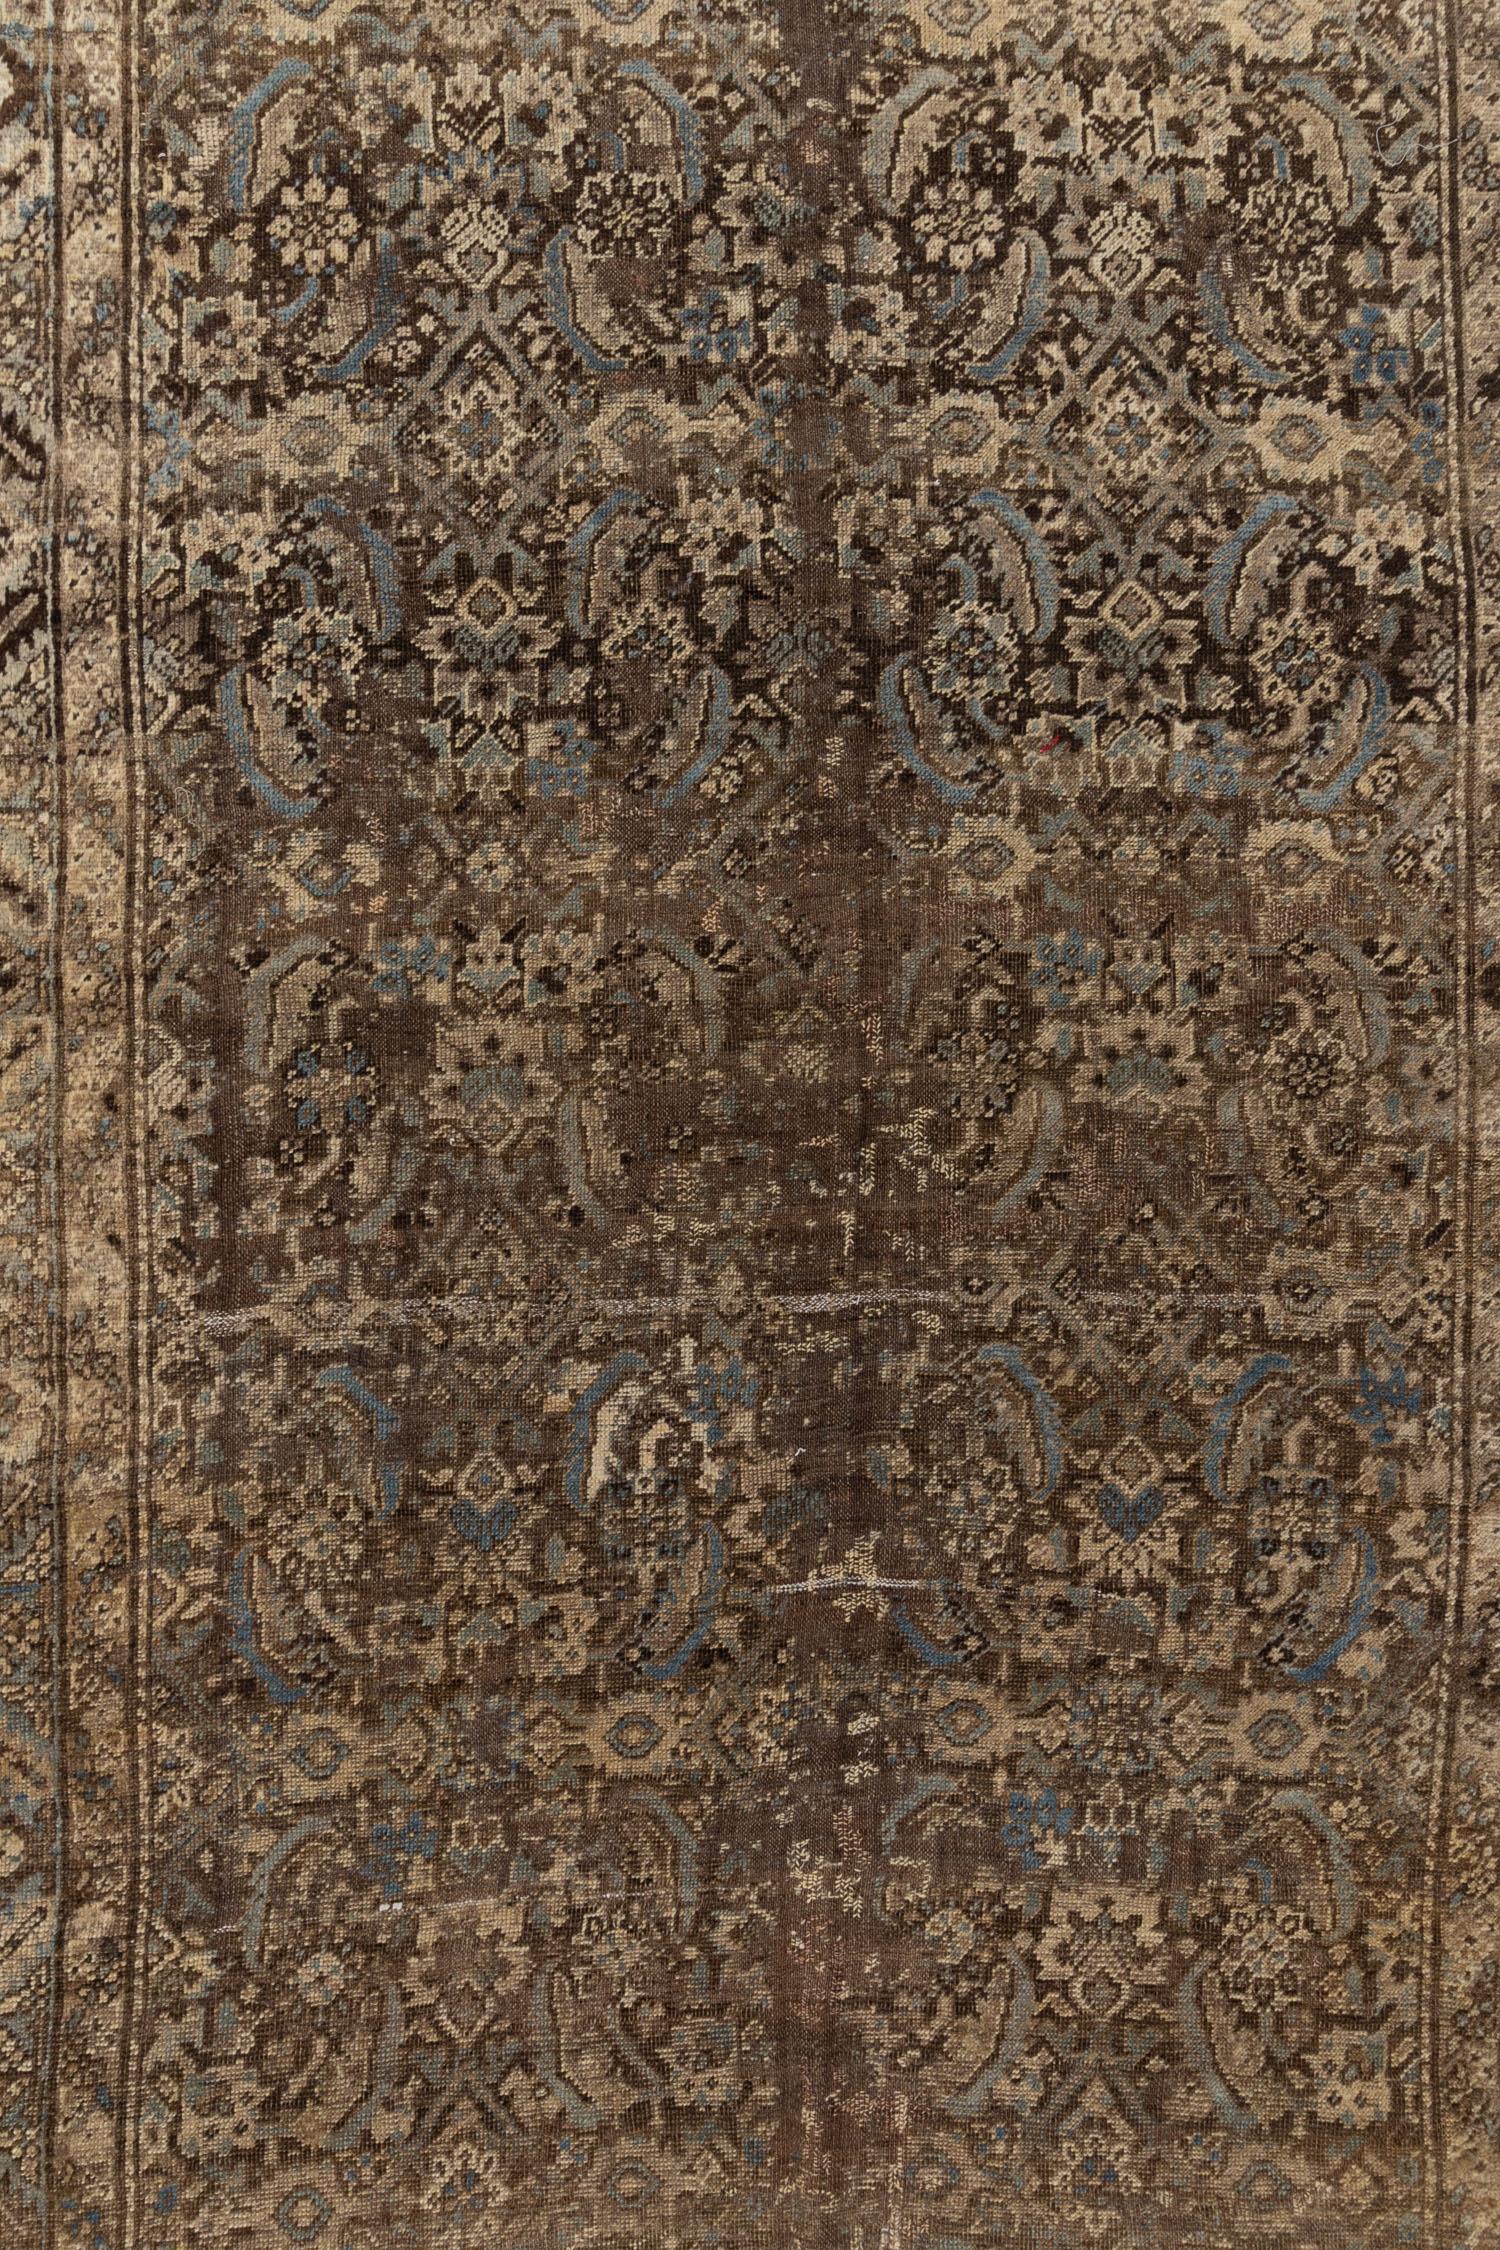 Schöner alter kurdischer Teppich mit Patina und Tiefe, gewebt vor Beginn des 20. Jahrhunderts. Bitte beachten Sie, dass wir diesen Teppich im Originalzustand belassen haben. Die Grenzen können vor dem Versand gesichert werden, wenn der Käufer dies